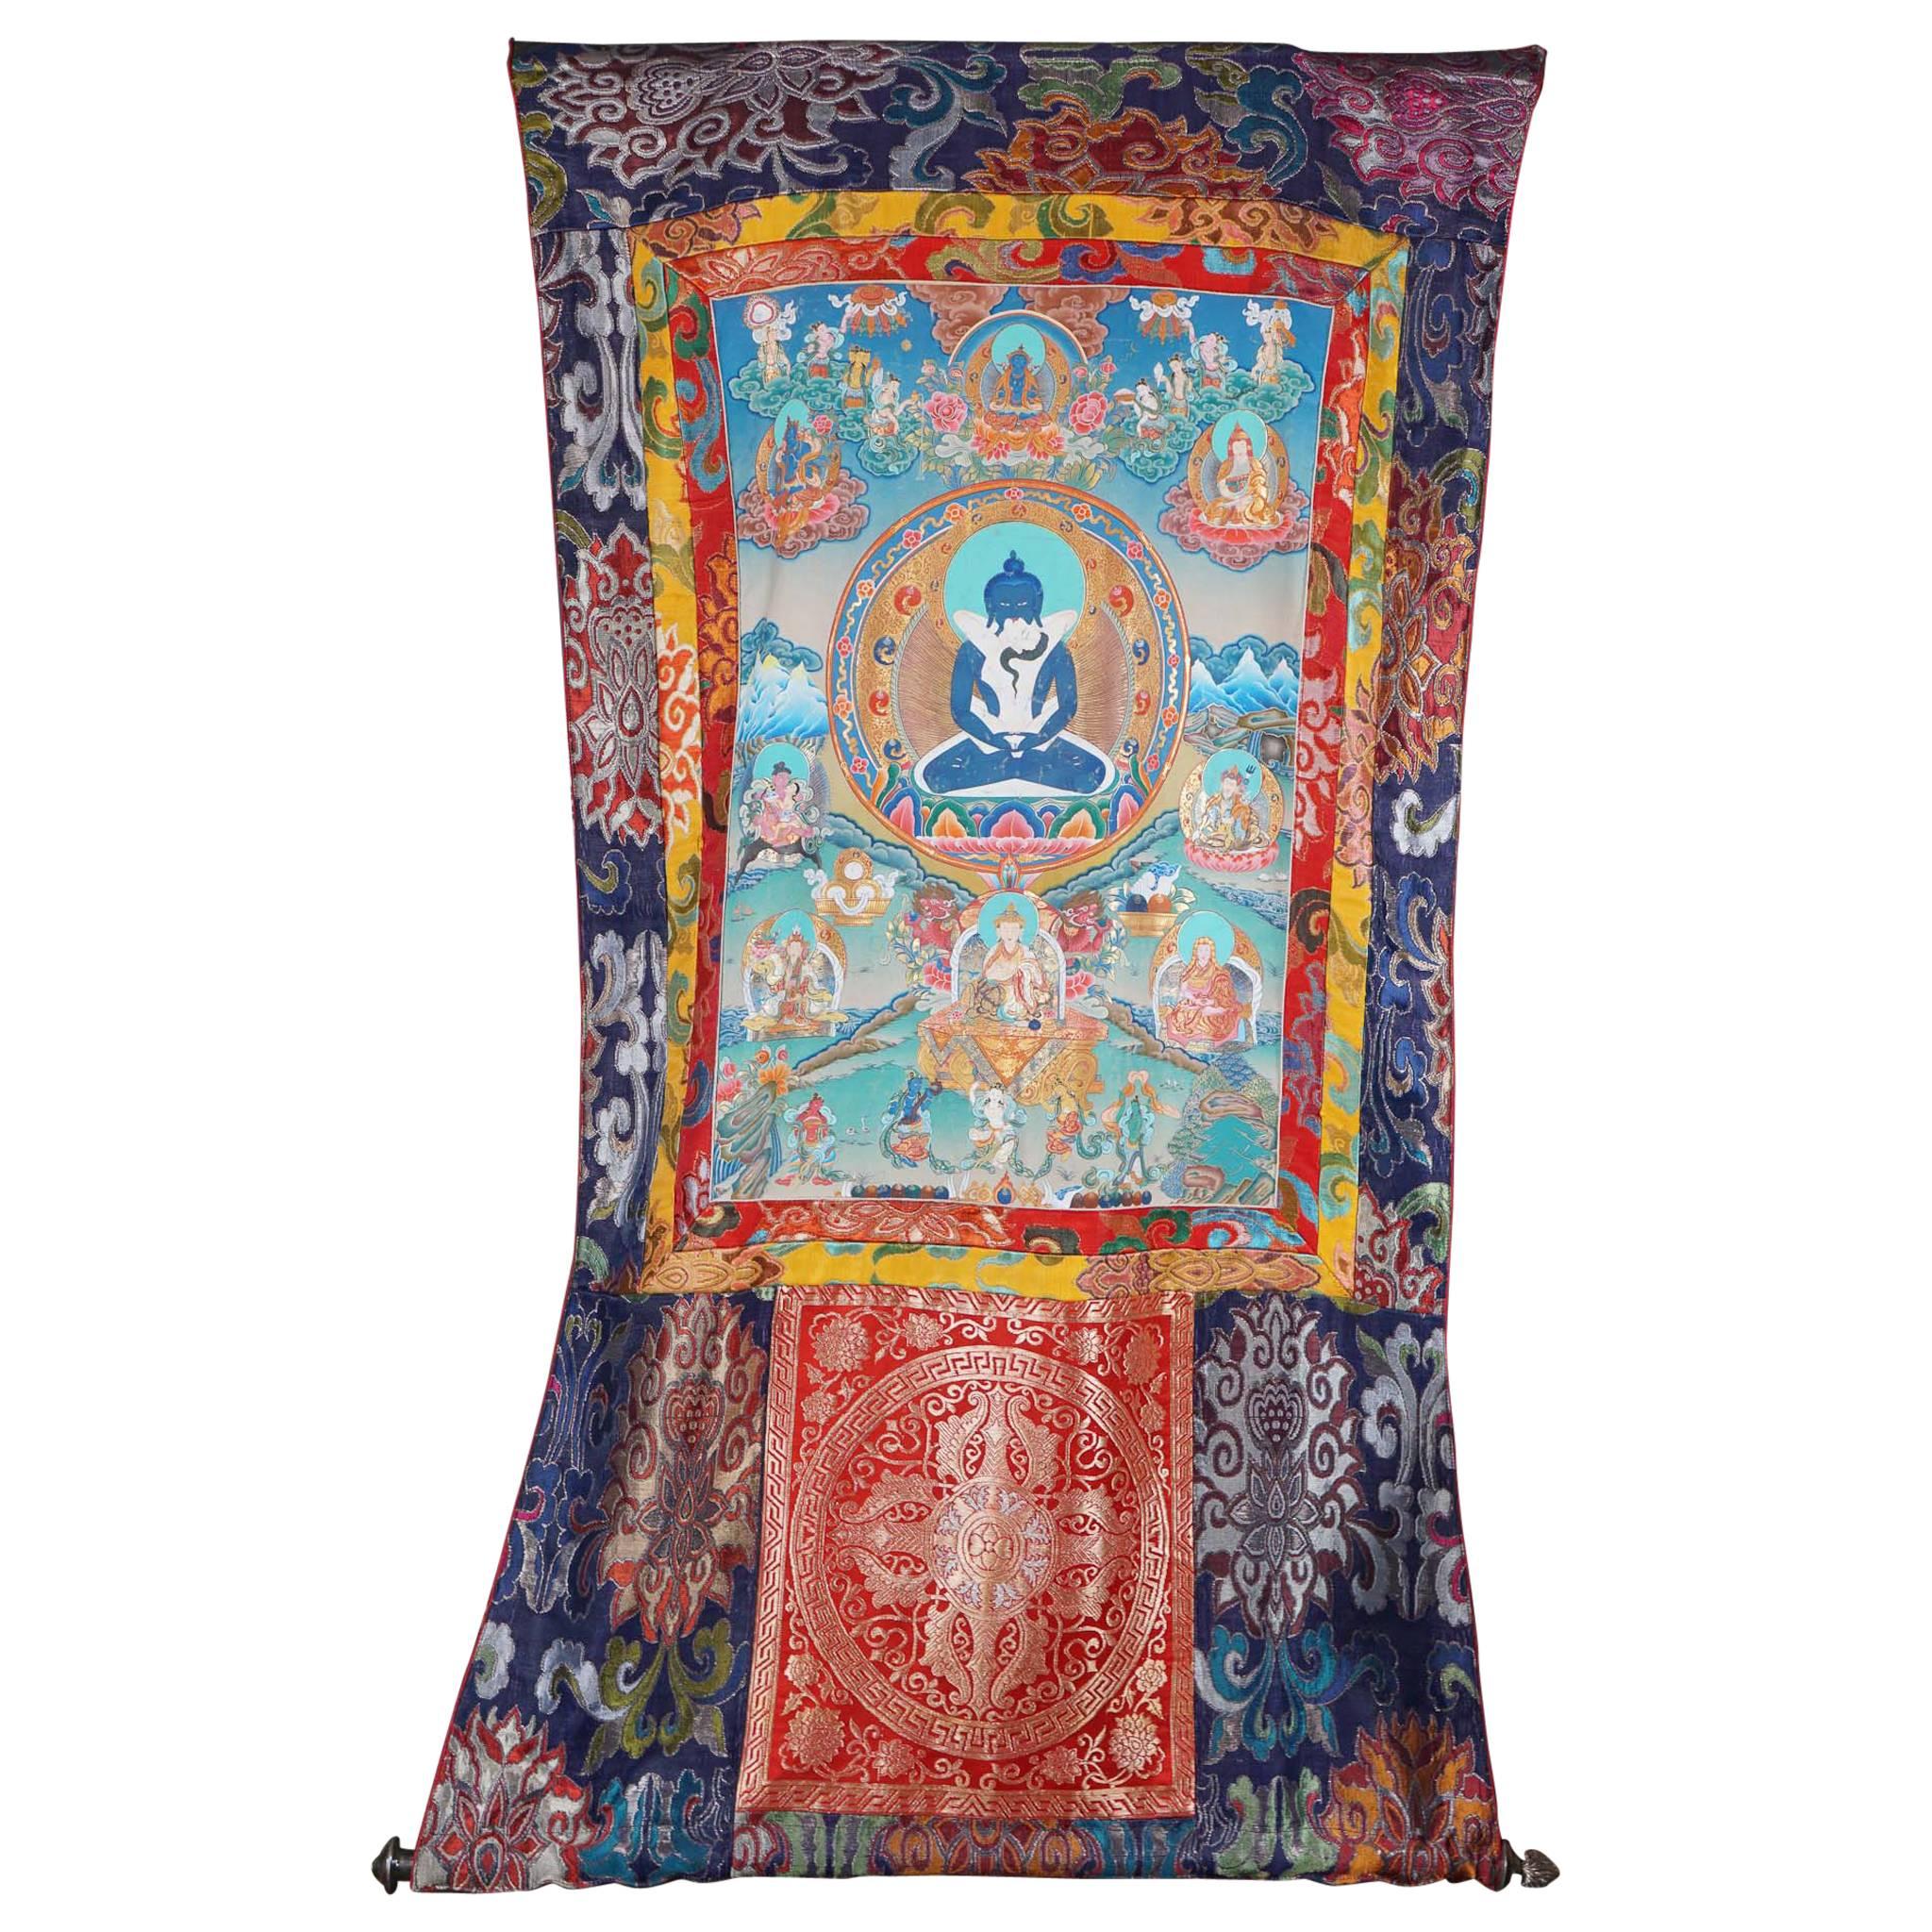 Hand-Painted on Silk Thankha, Modern, Tibet/China